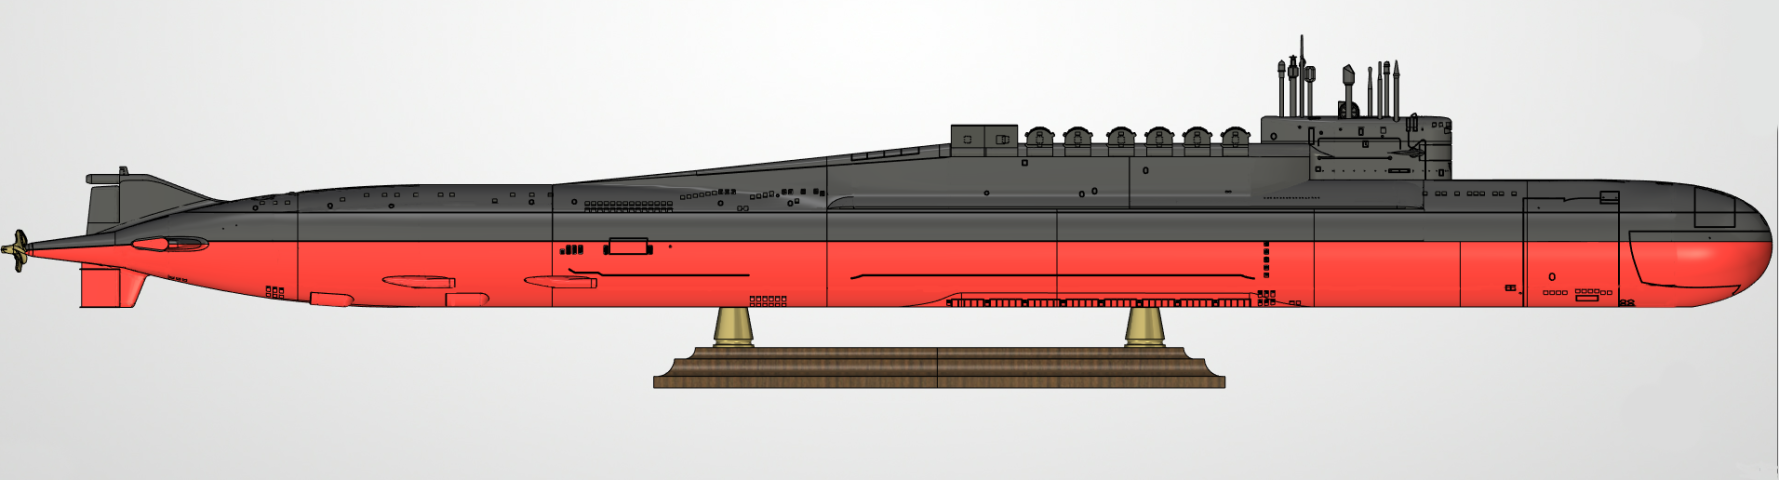 Подводная лодка БДРМ 667 Дельфин